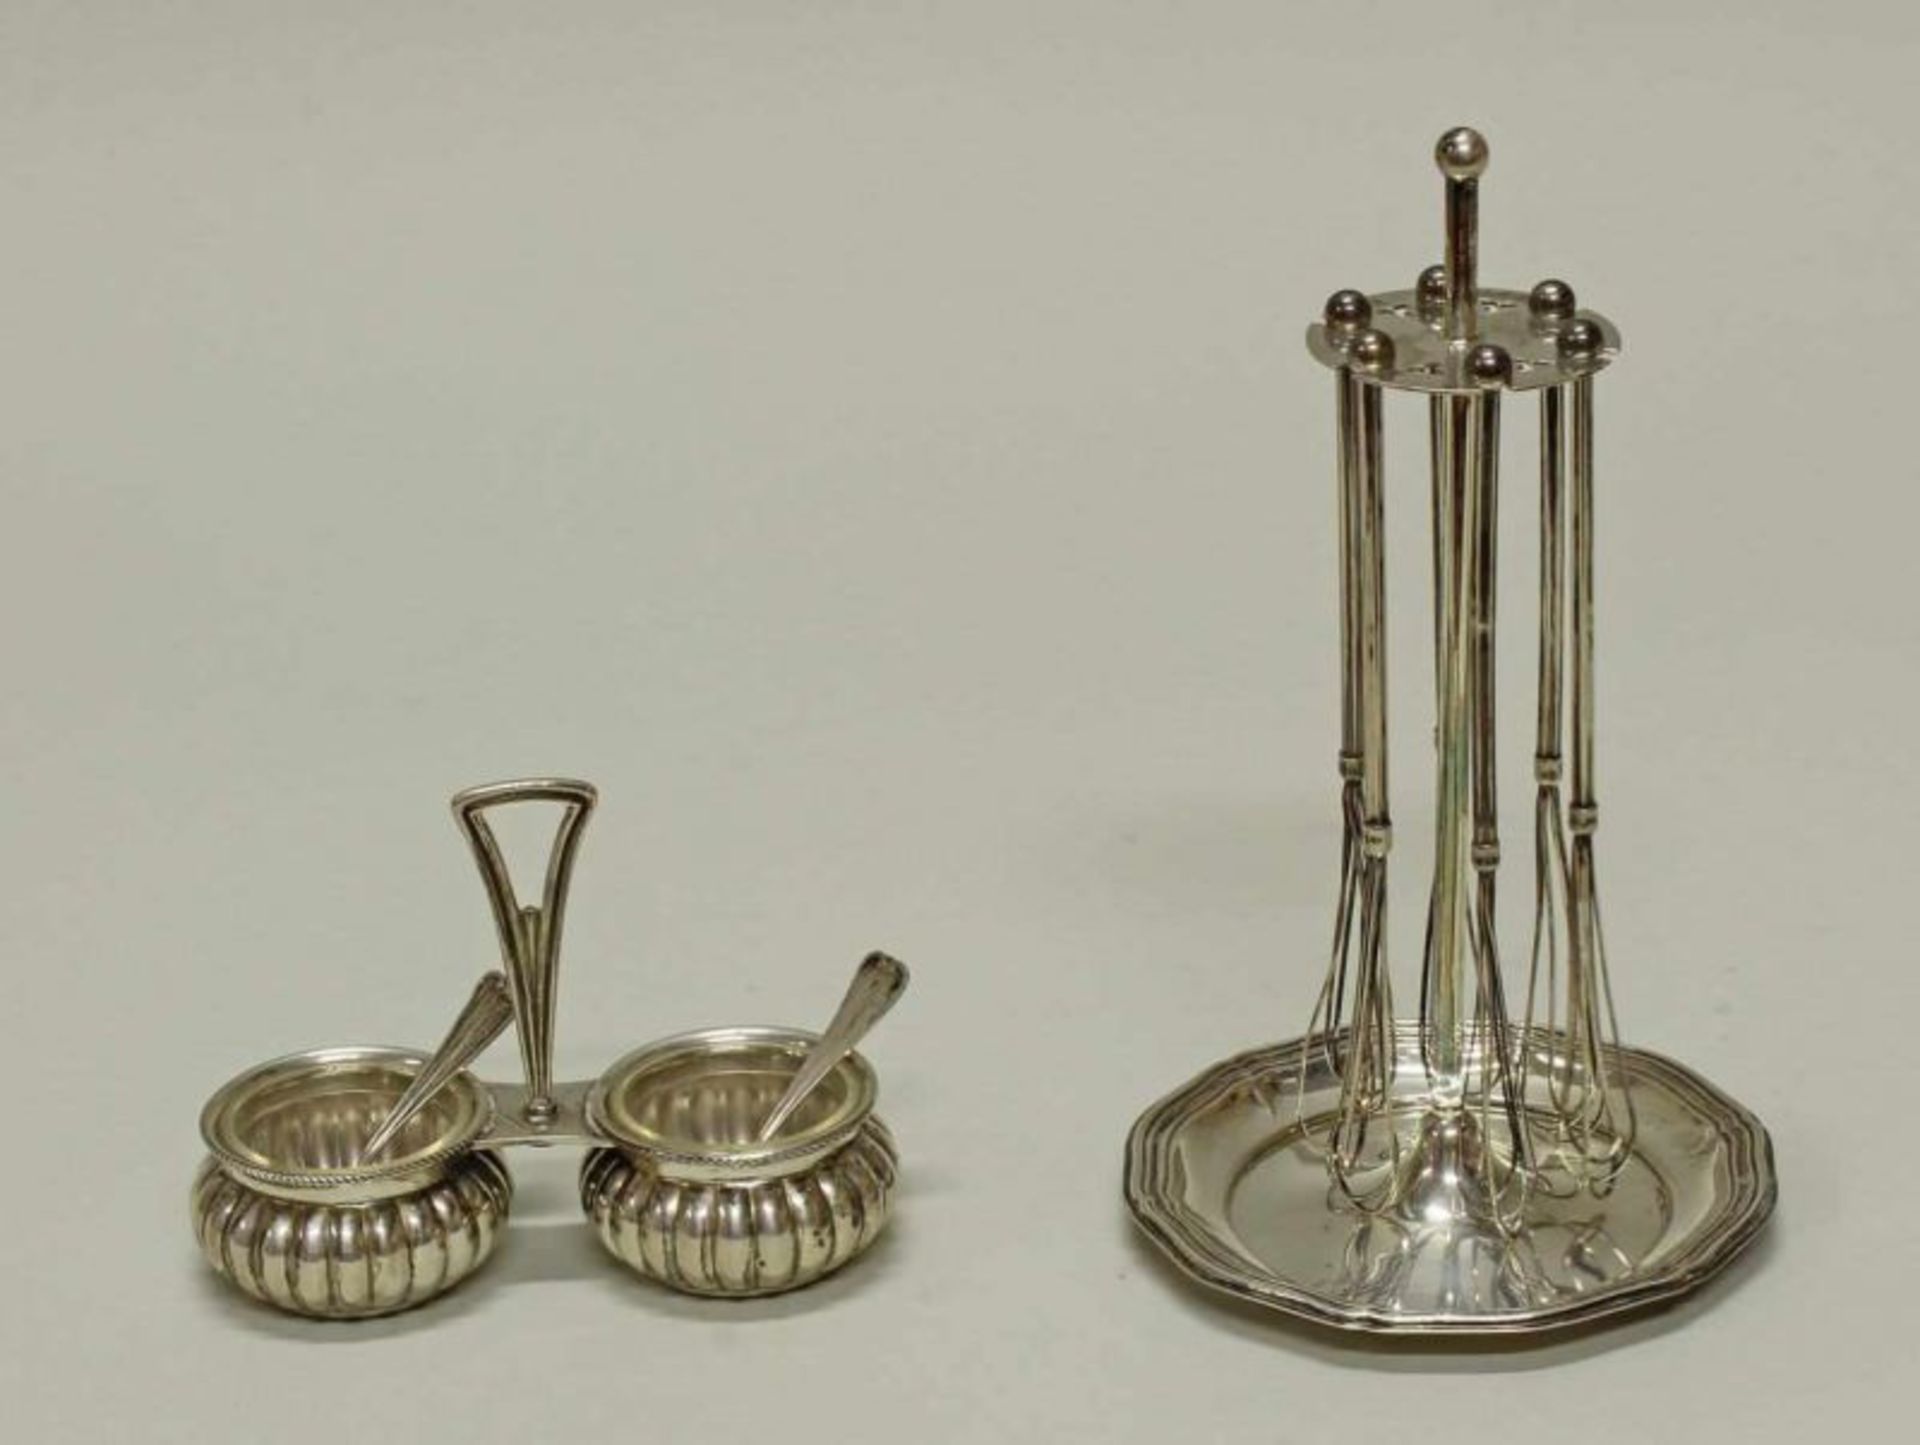 Quirlständer, Silber 835, Lutz & Weiß, mit 6 Sektquirls, 17.5 cm hoch, ca. 90 g; Salière mit 2